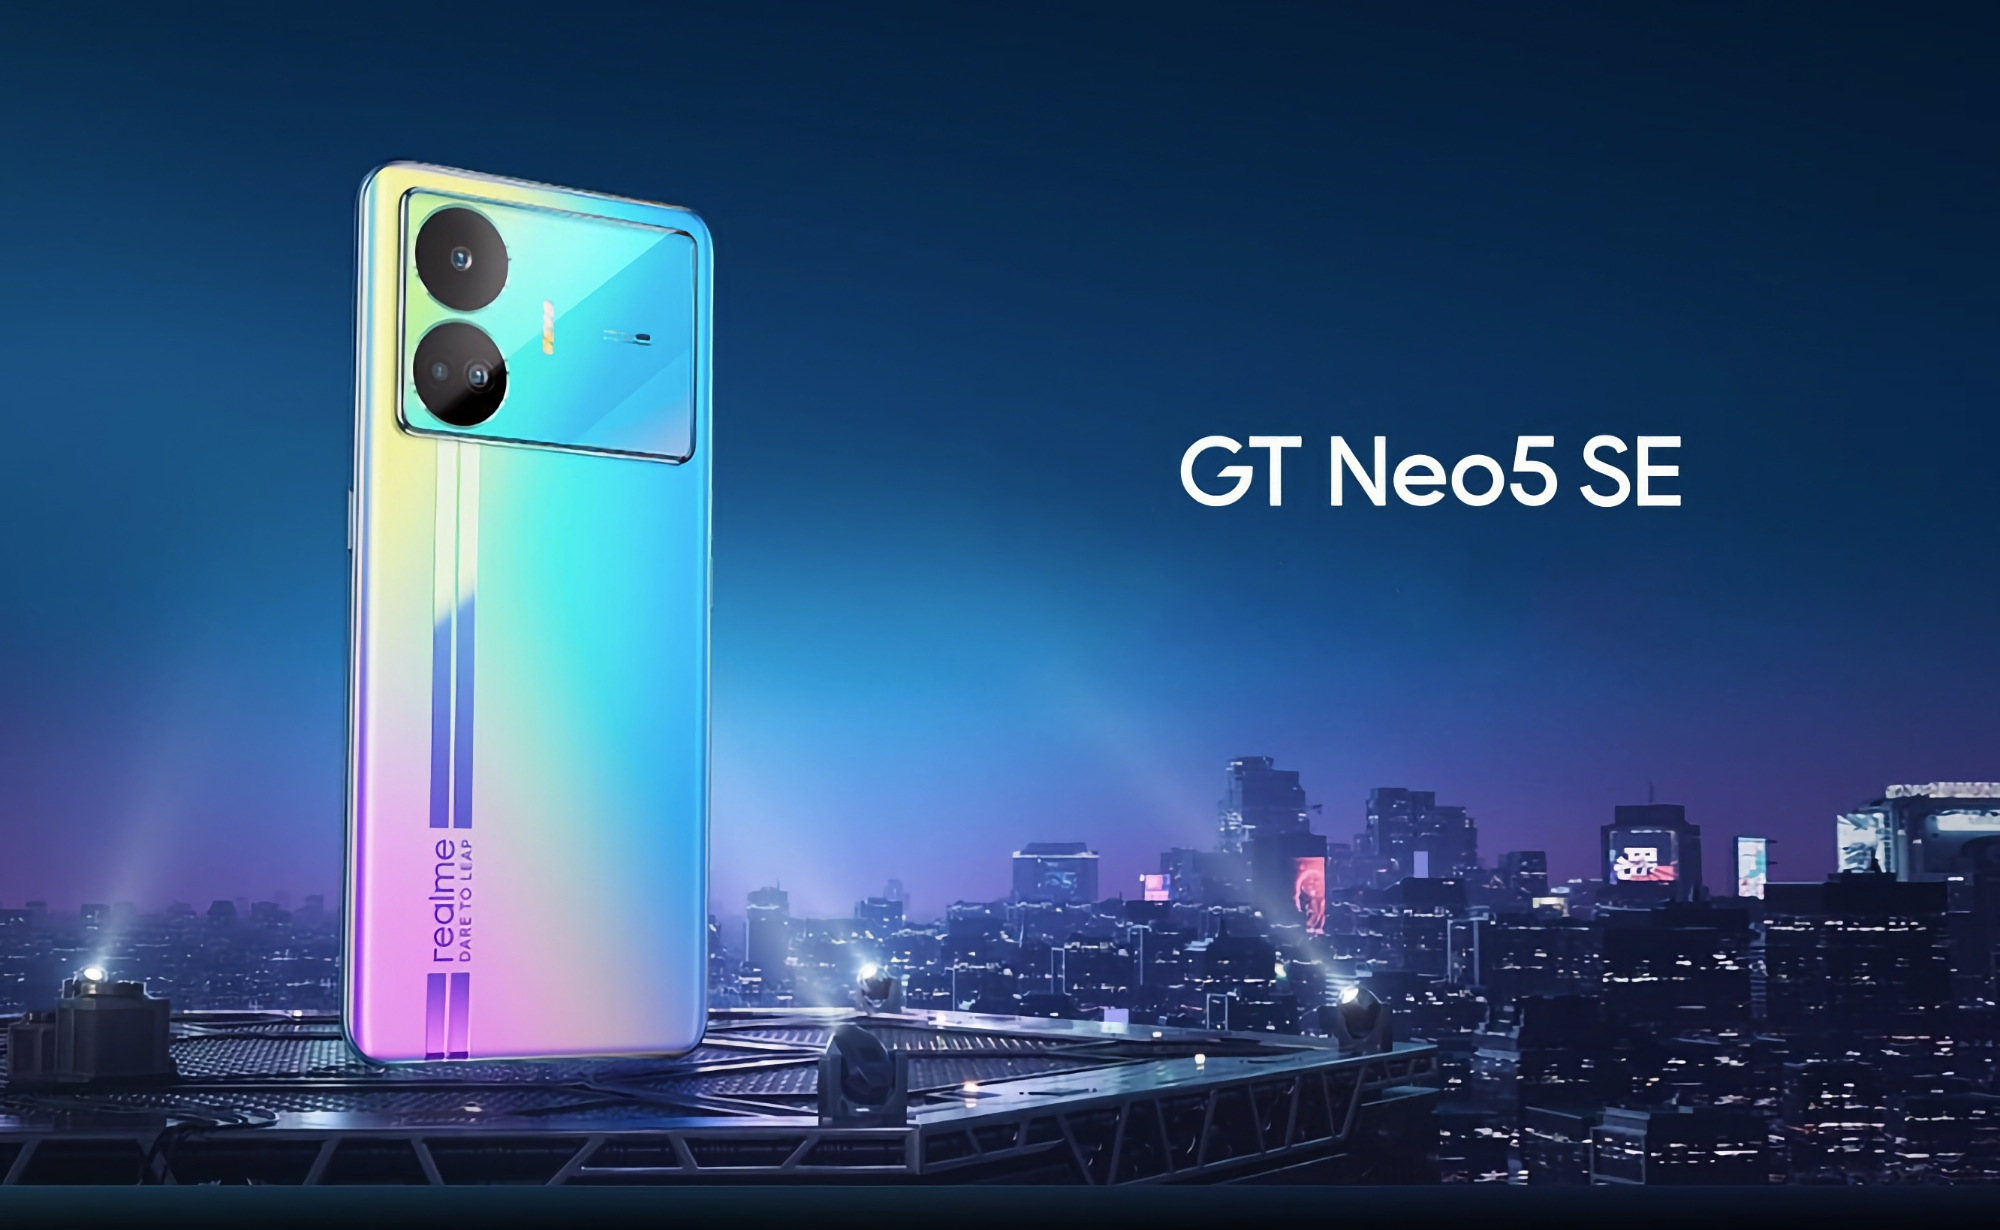 È ufficiale: realme GT Neo 5 SE ottiene 16GB di RAM e un disco da 1TB